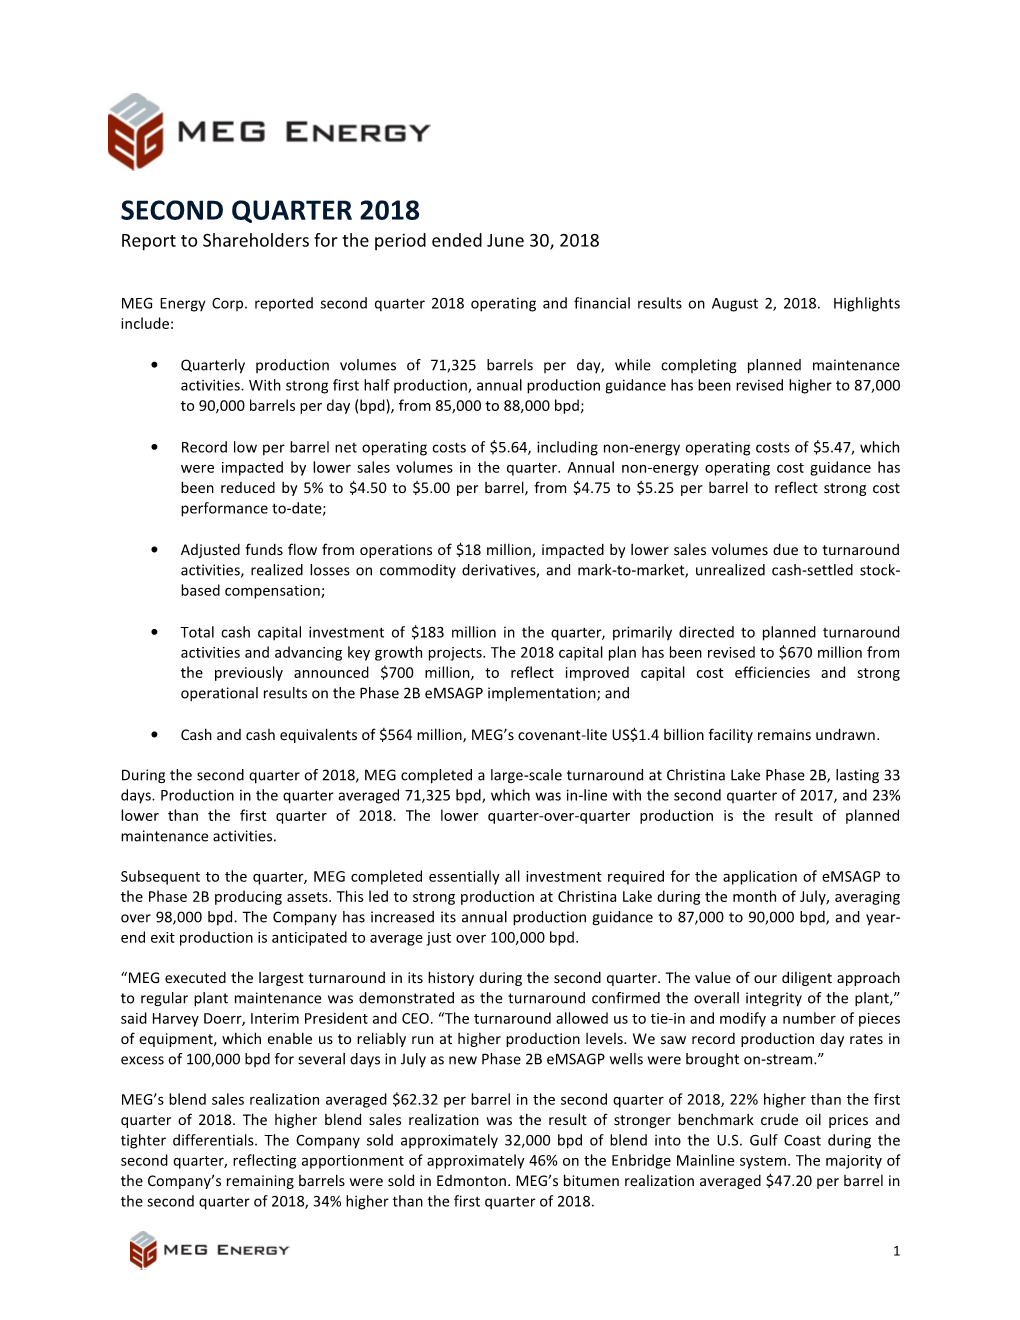 The Second-Quarter 2018 Report